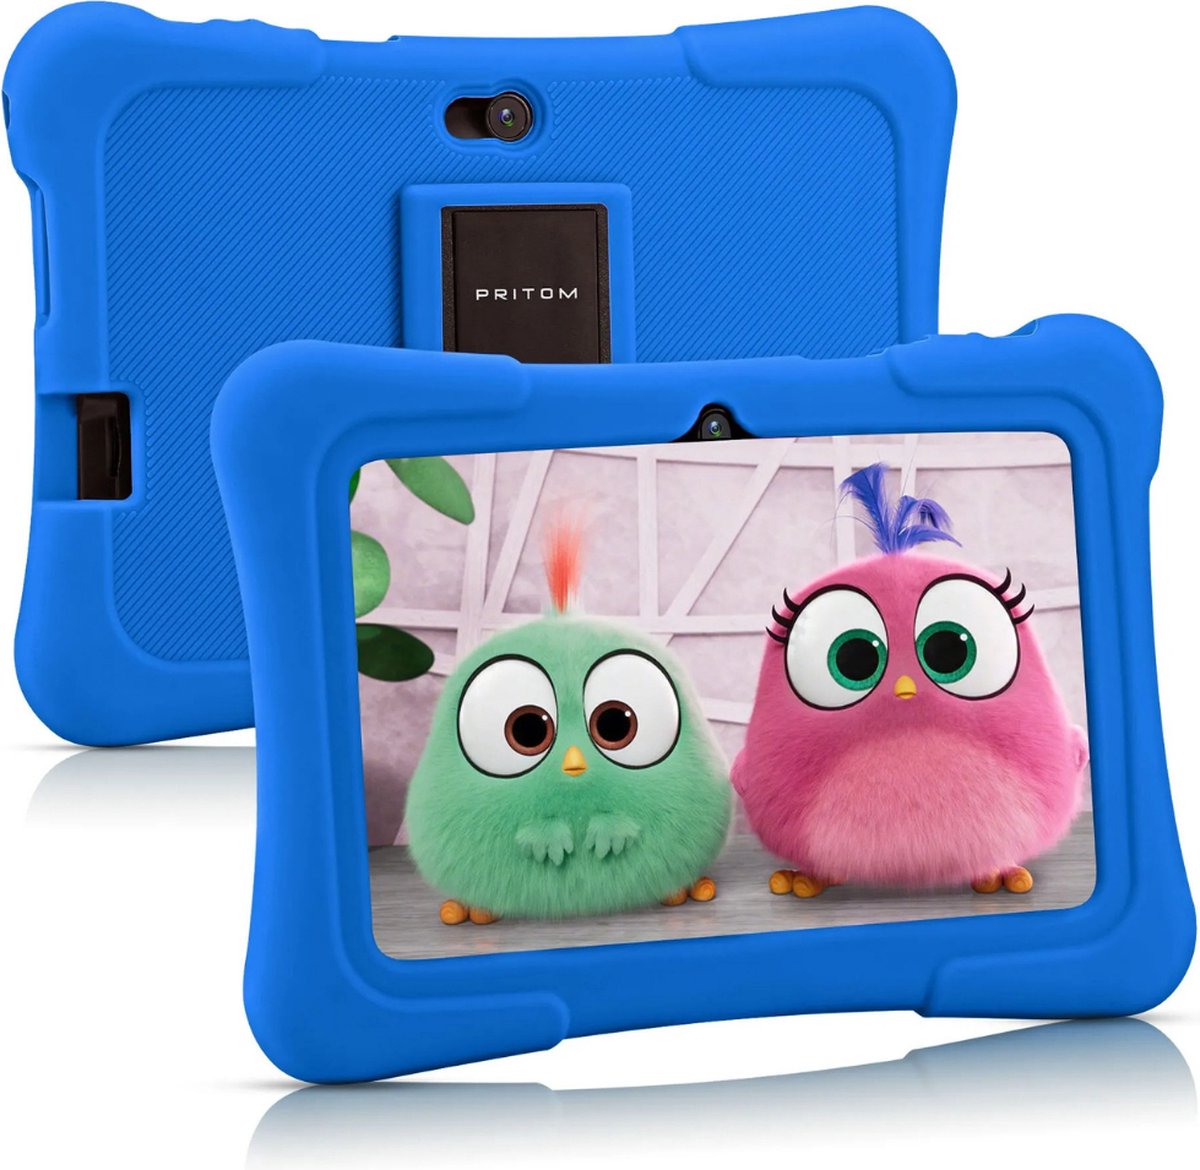 P&P Goods Kindertablet Blauw - Geïnstalleerde Educatieve Software - Beveiliging Controle - Contentbeheer - Tablet Kinderen - Apps Downloaden - Android 10 - 7 Inch - Wifi - Bluetooth - Blauw